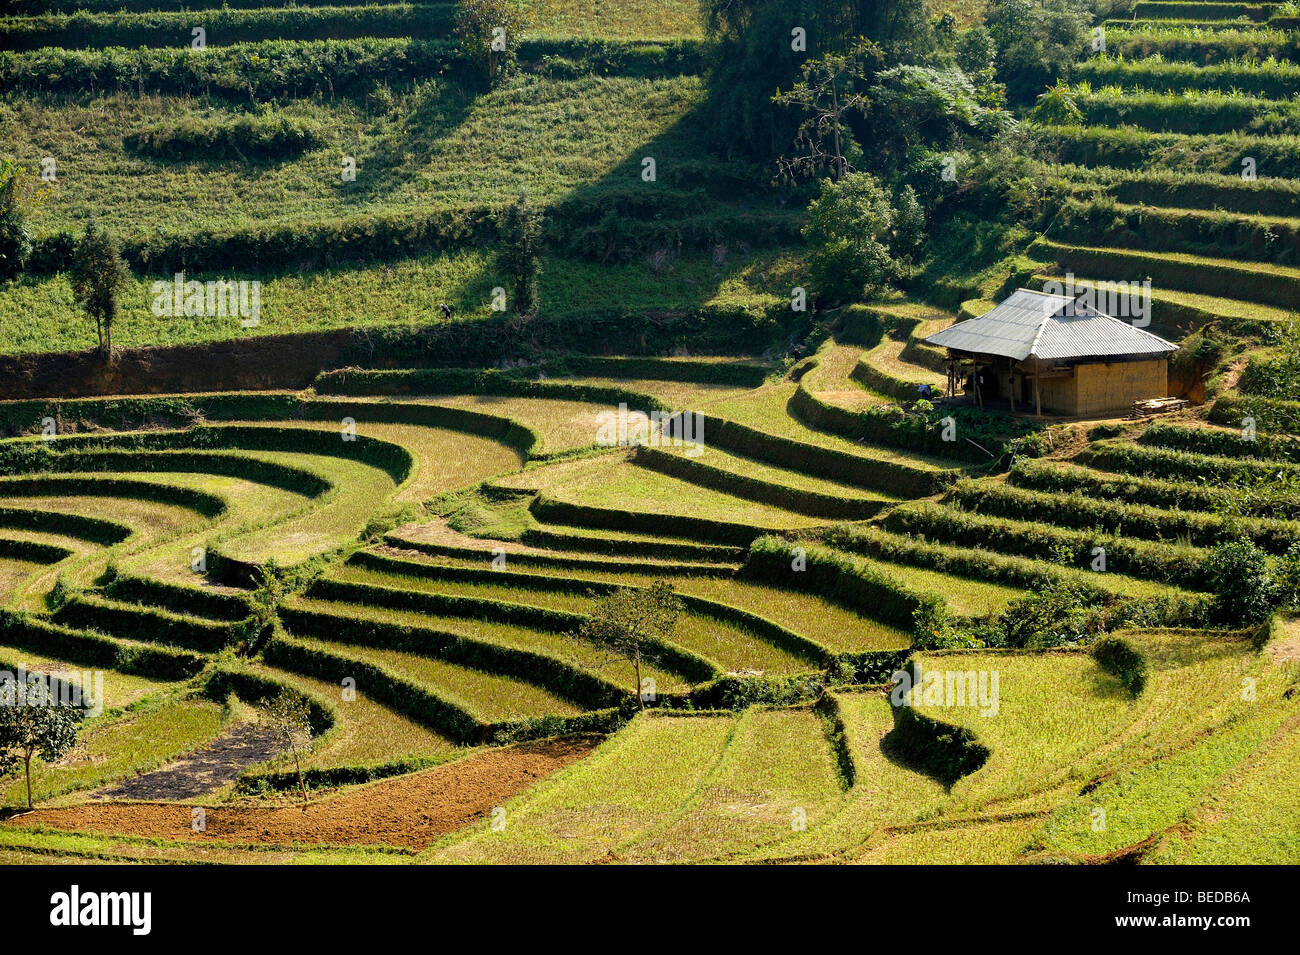 Capanna su terrazze di riso, Bac Ha, Vietnam del nord, sud-est asiatico Foto Stock